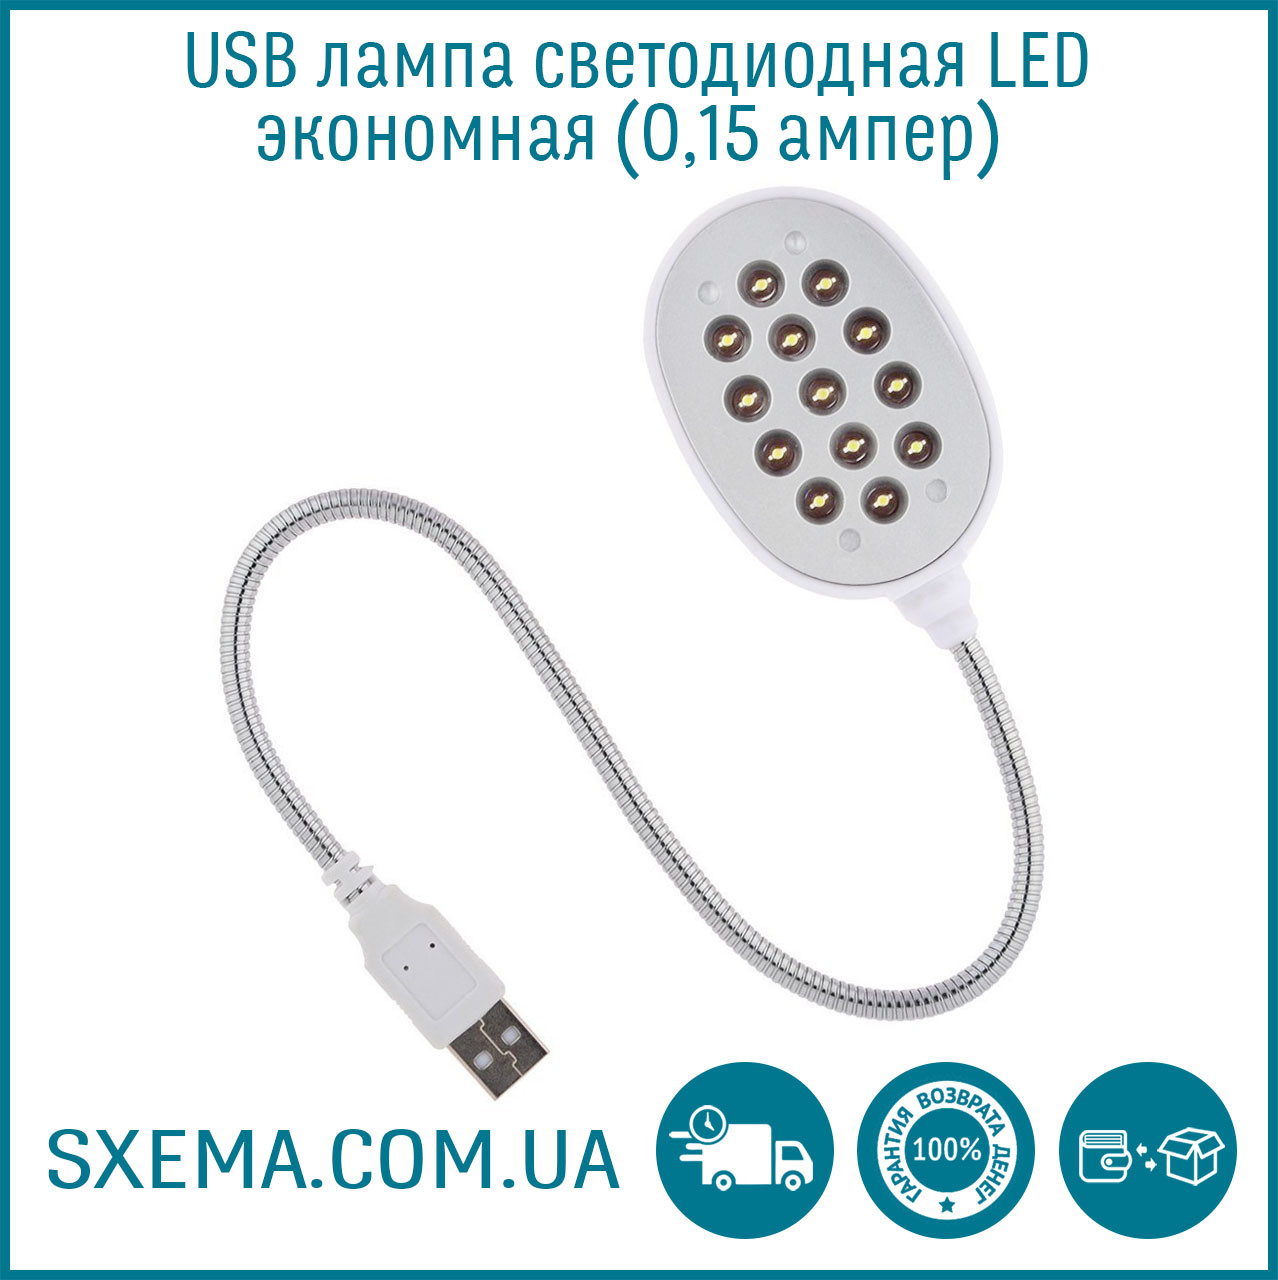 USB-лампа світлодіодна, яскраве біле світло, економна 0,15 ампер Led 